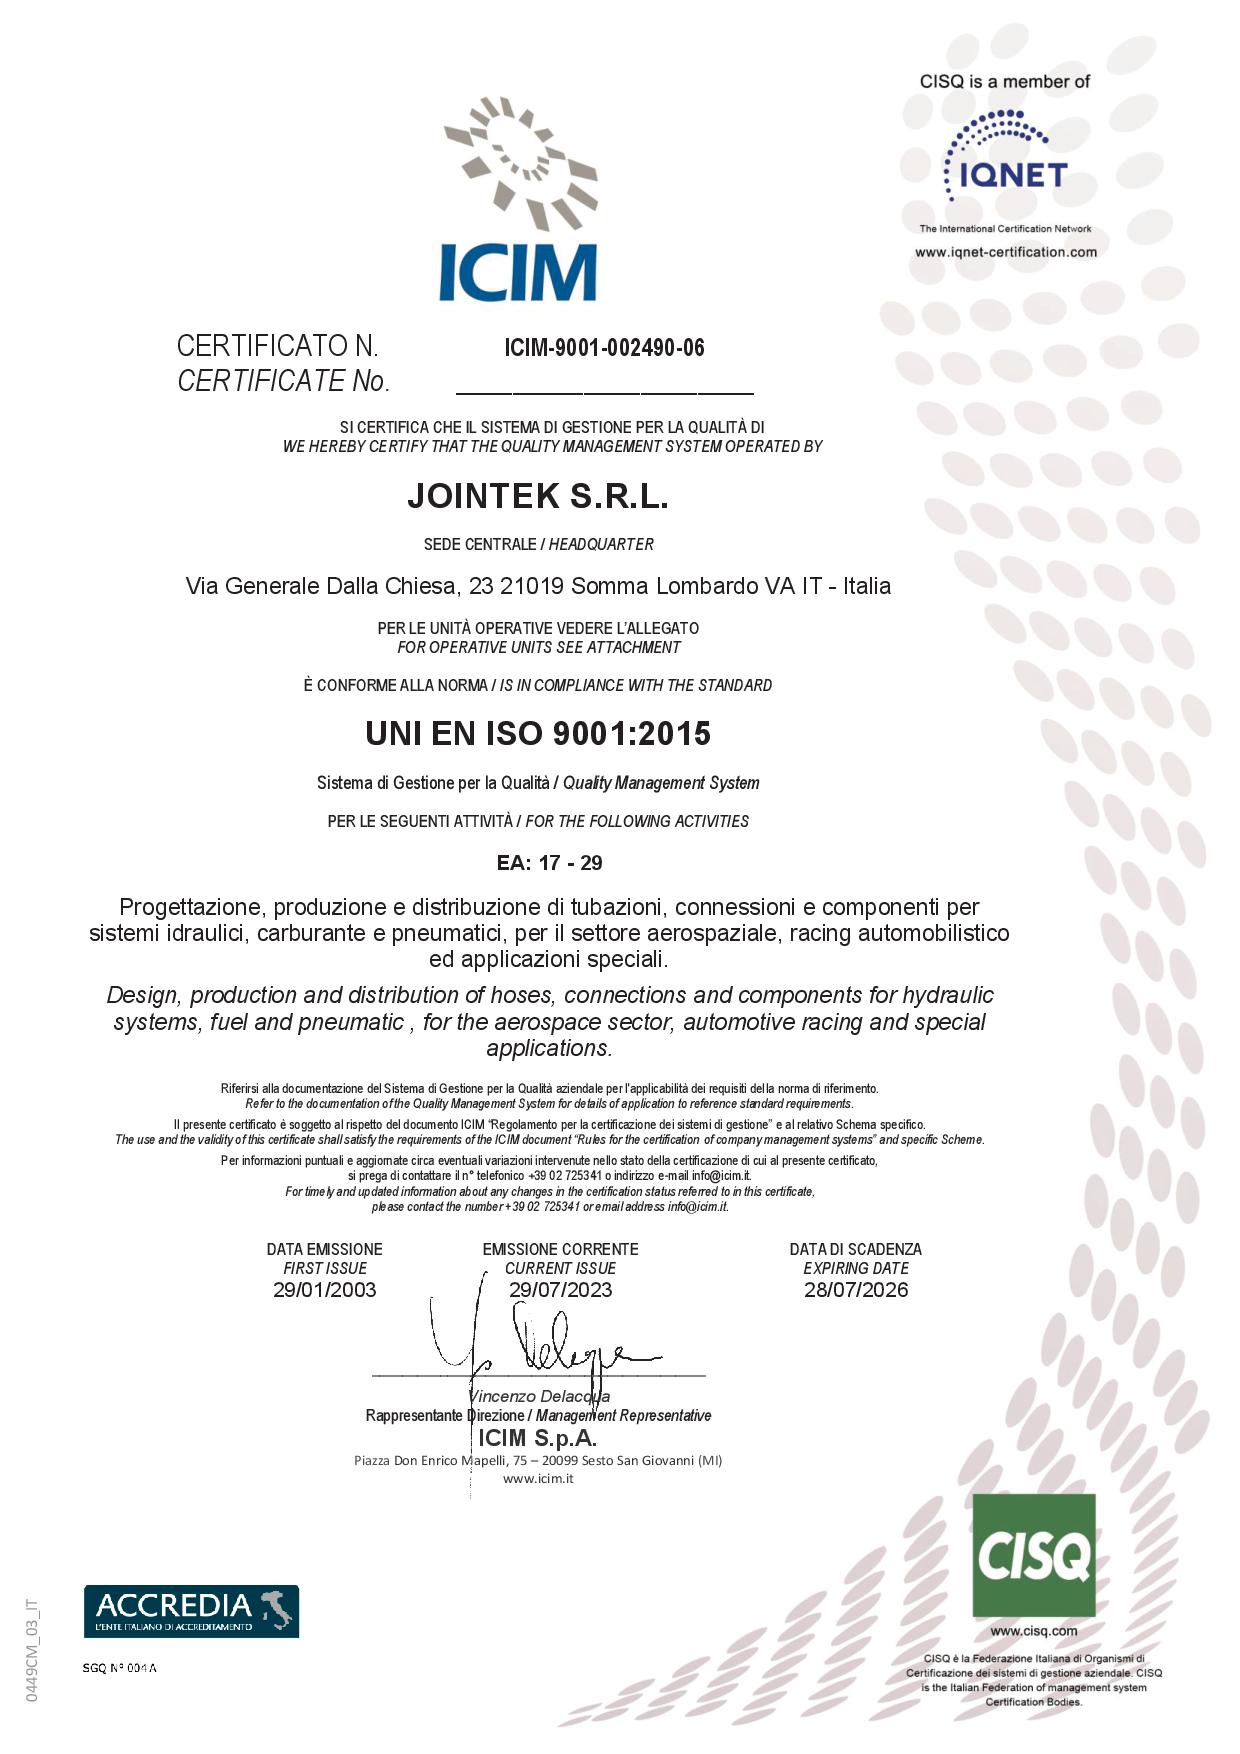 3 Jointek EN ISO 9001 2015 exp date 28 lug 2026